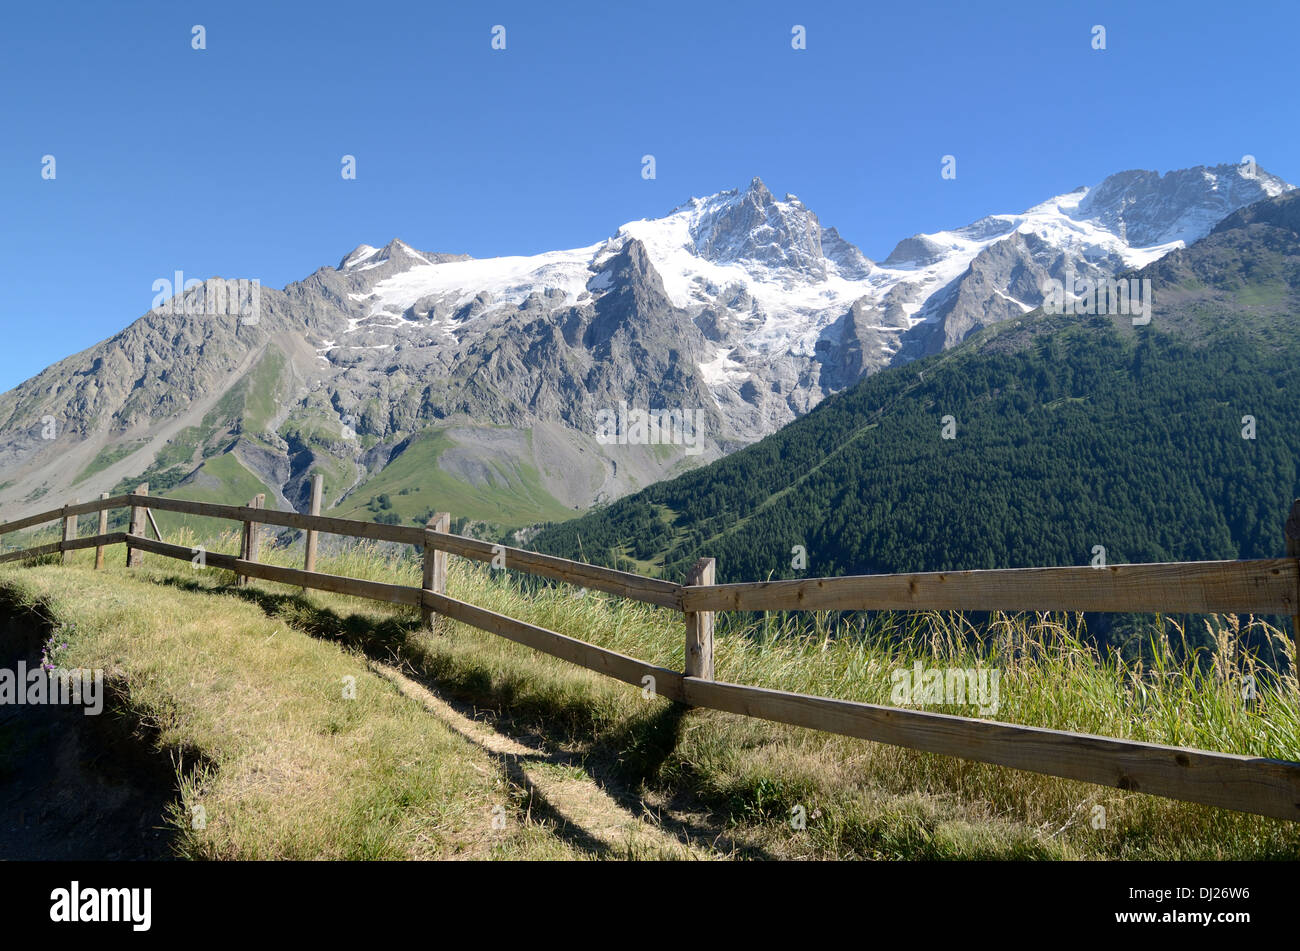 La Meije Peak & Glacier Parco Nazionale degli Ecrins De La Grave Hautes-Alpes sulle Alpi francesi Francia Foto Stock